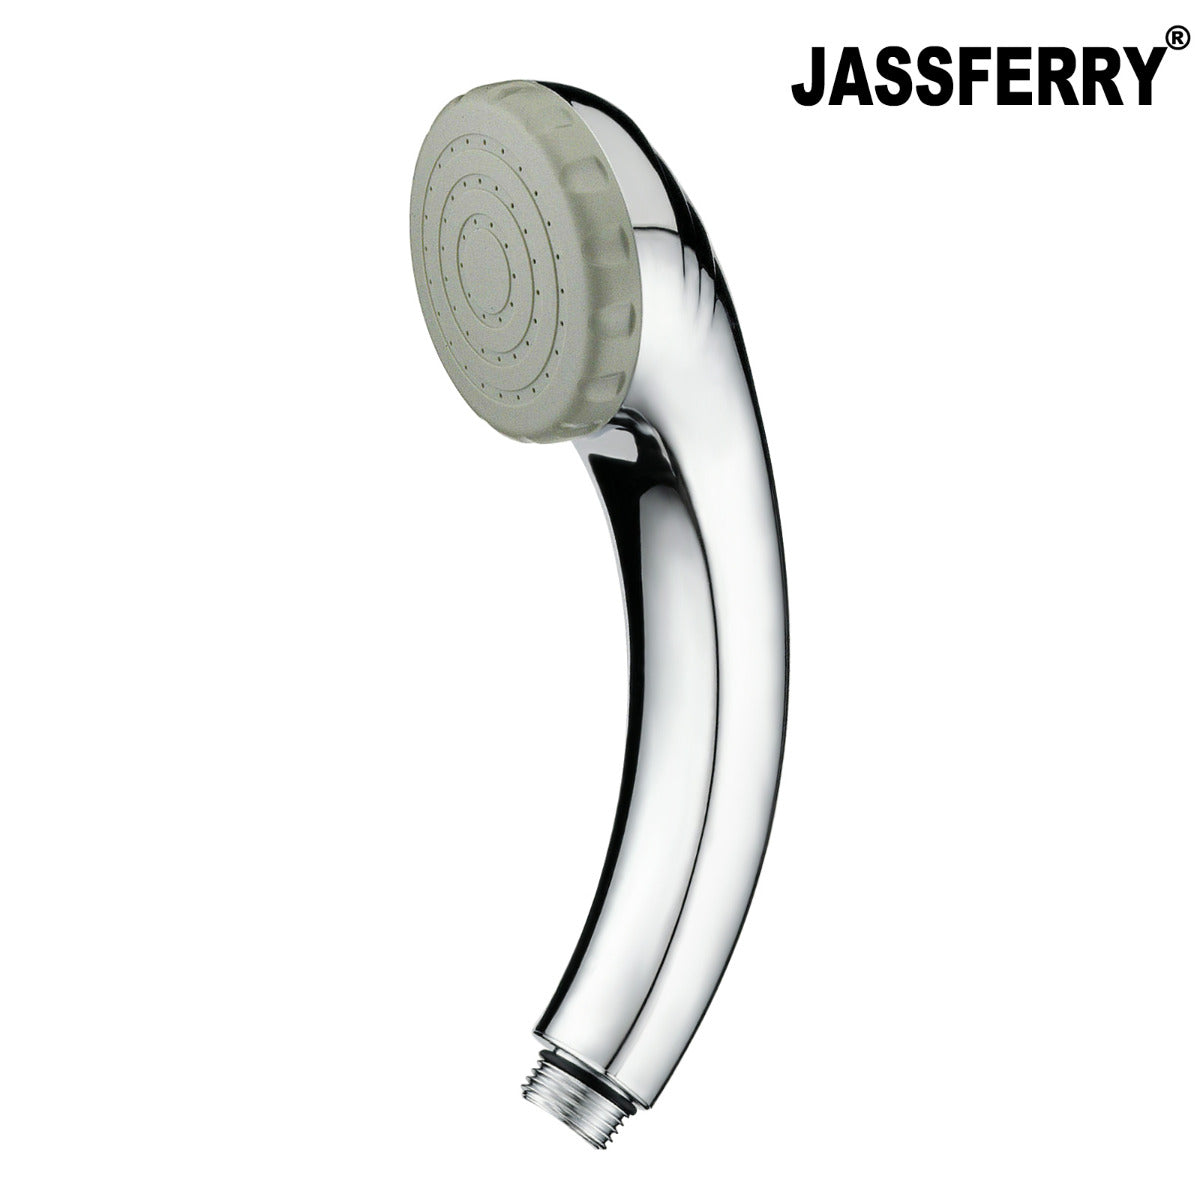 JassferryJASSFERRY Shower Massage Spray Heads Handset Hand Holder Chrome PolishShower Heads